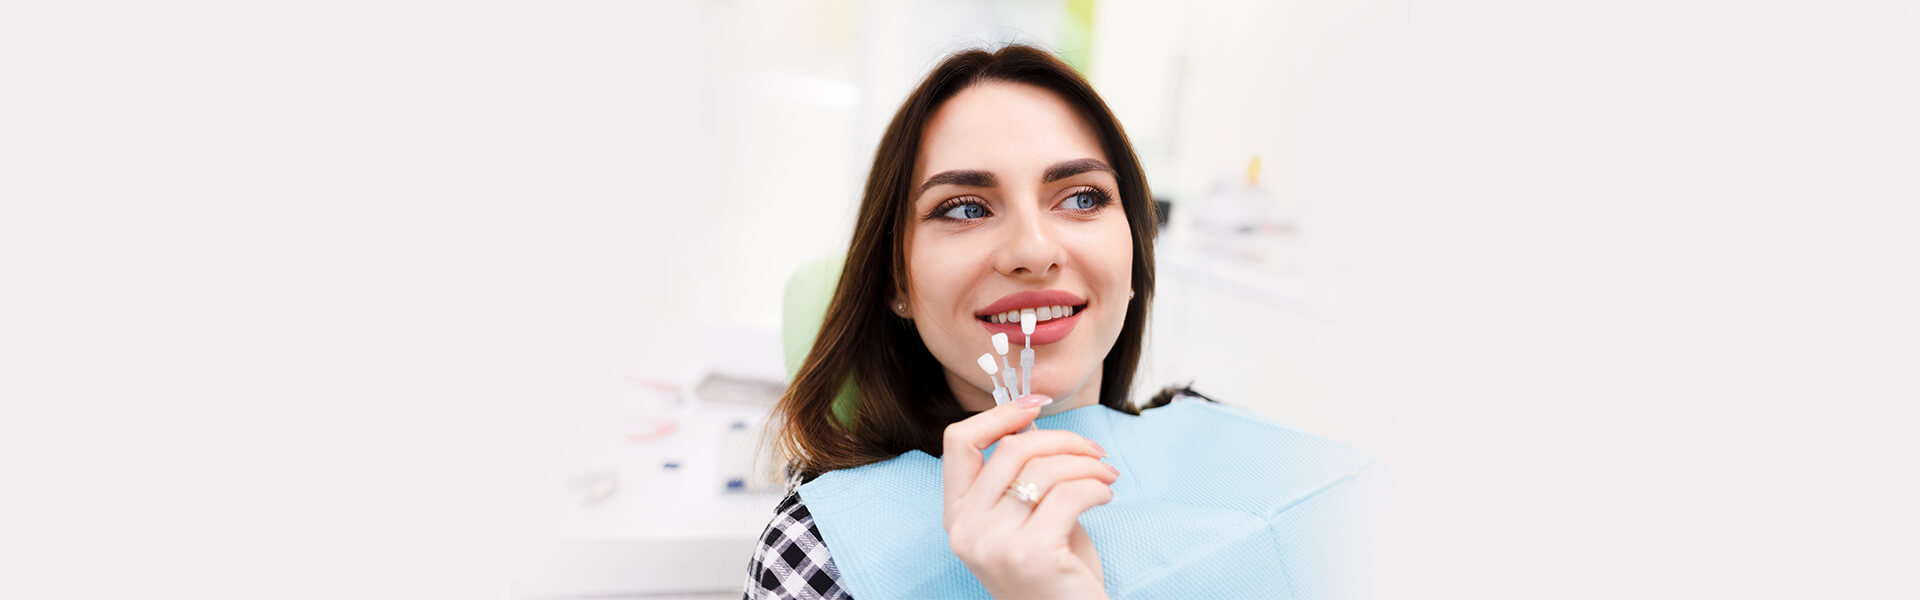 Dental Veneers Help Hide Blemishes on Your Front Teeth